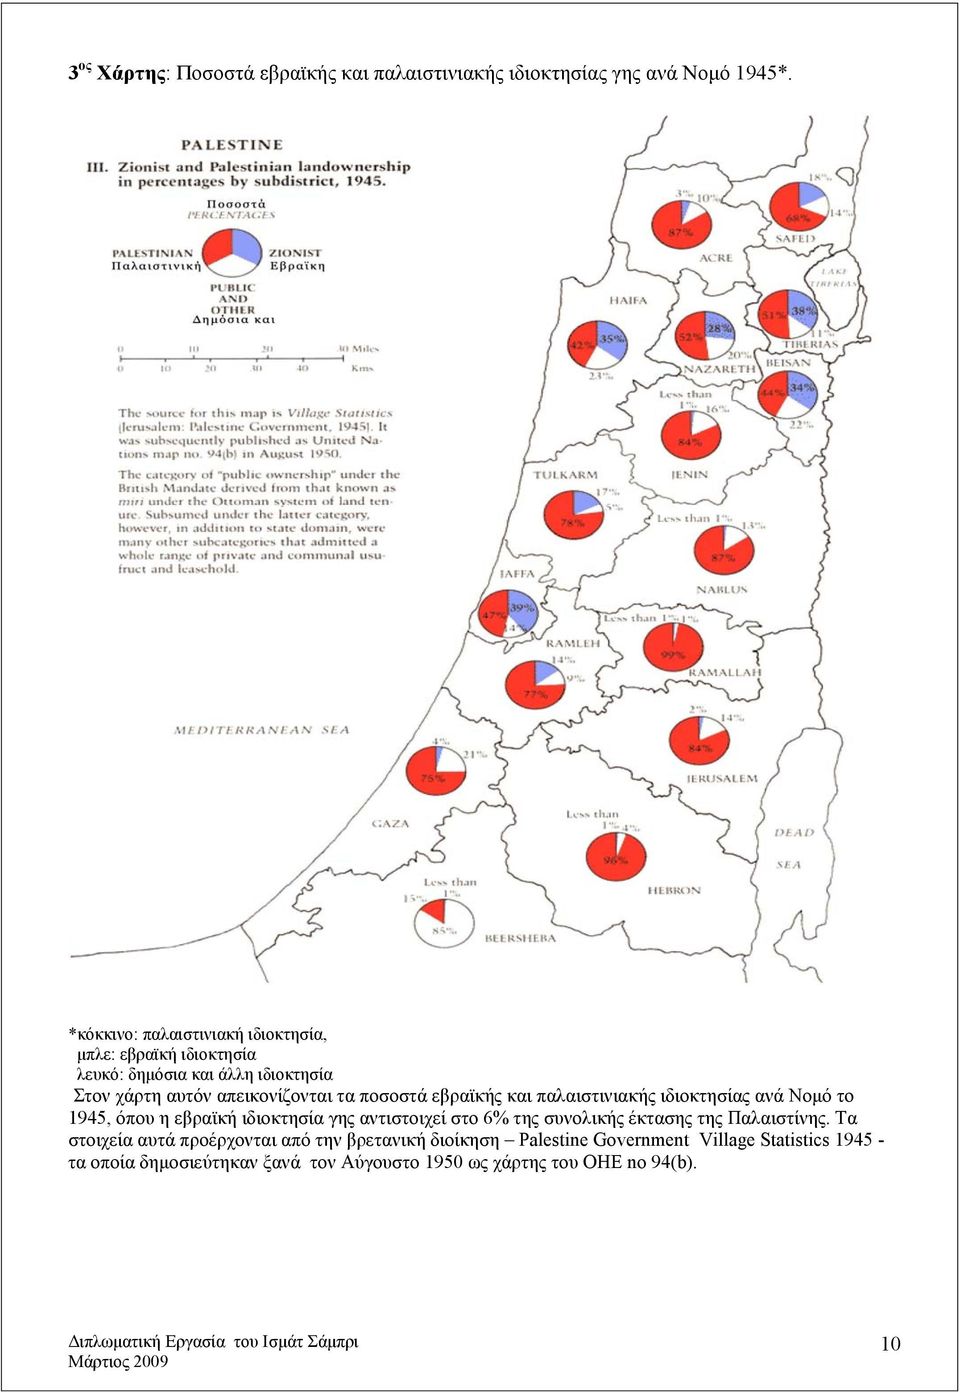 ποσοστά εβραϊκής και παλαιστινιακής ιδιοκτησίας ανά Νομό το 1945, όπου η εβραϊκή ιδιοκτησία γης αντιστοιχεί στο 6% της συνολικής έκτασης